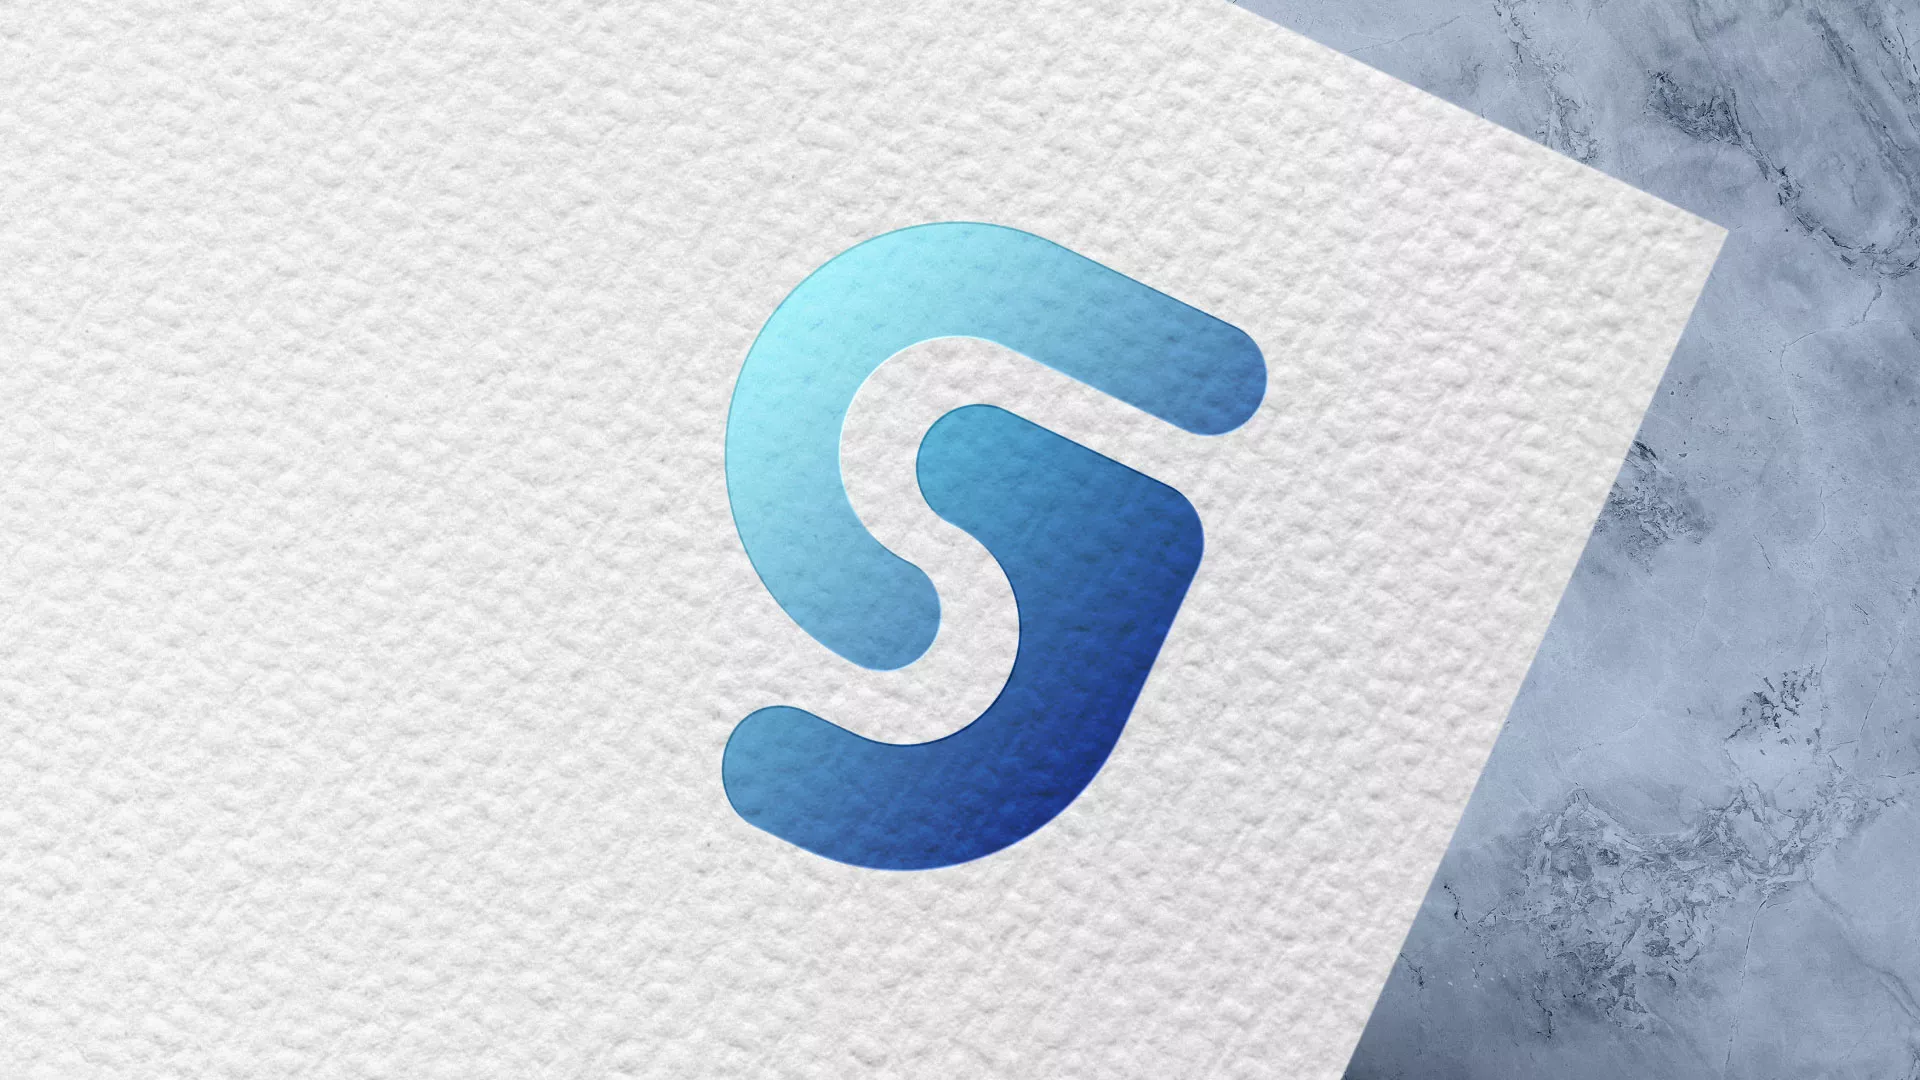 Разработка логотипа газовой компании «Сервис газ» в Соколе